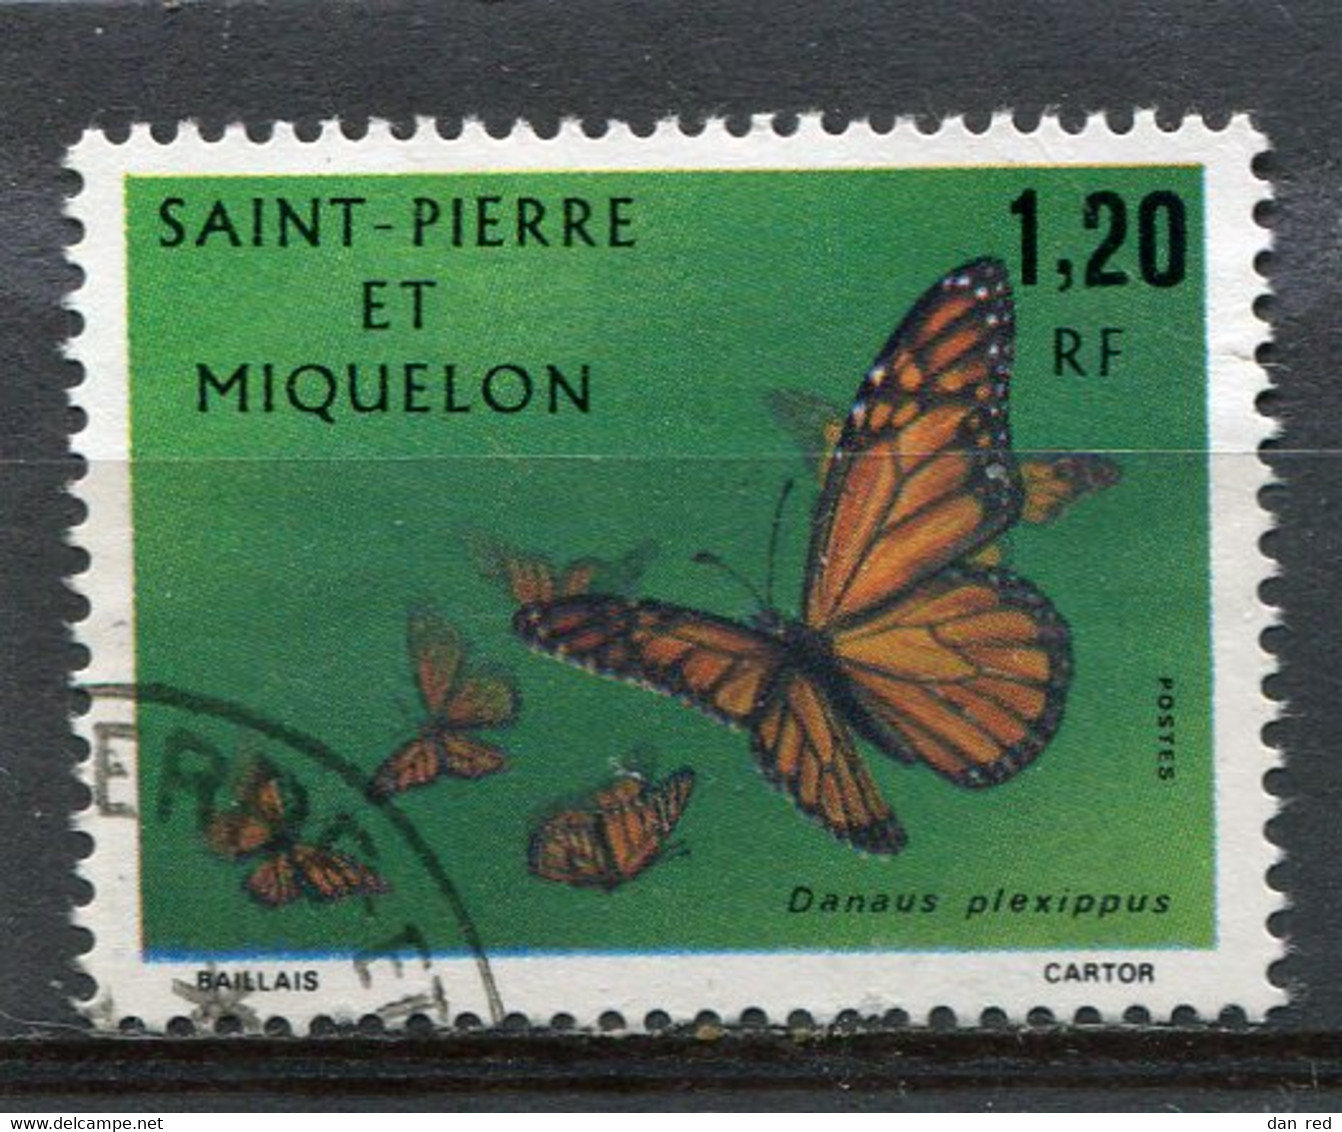 SAINT-PIERRE ET MIQUELON N° 442  (Y&T) (Oblitéré) - Used Stamps